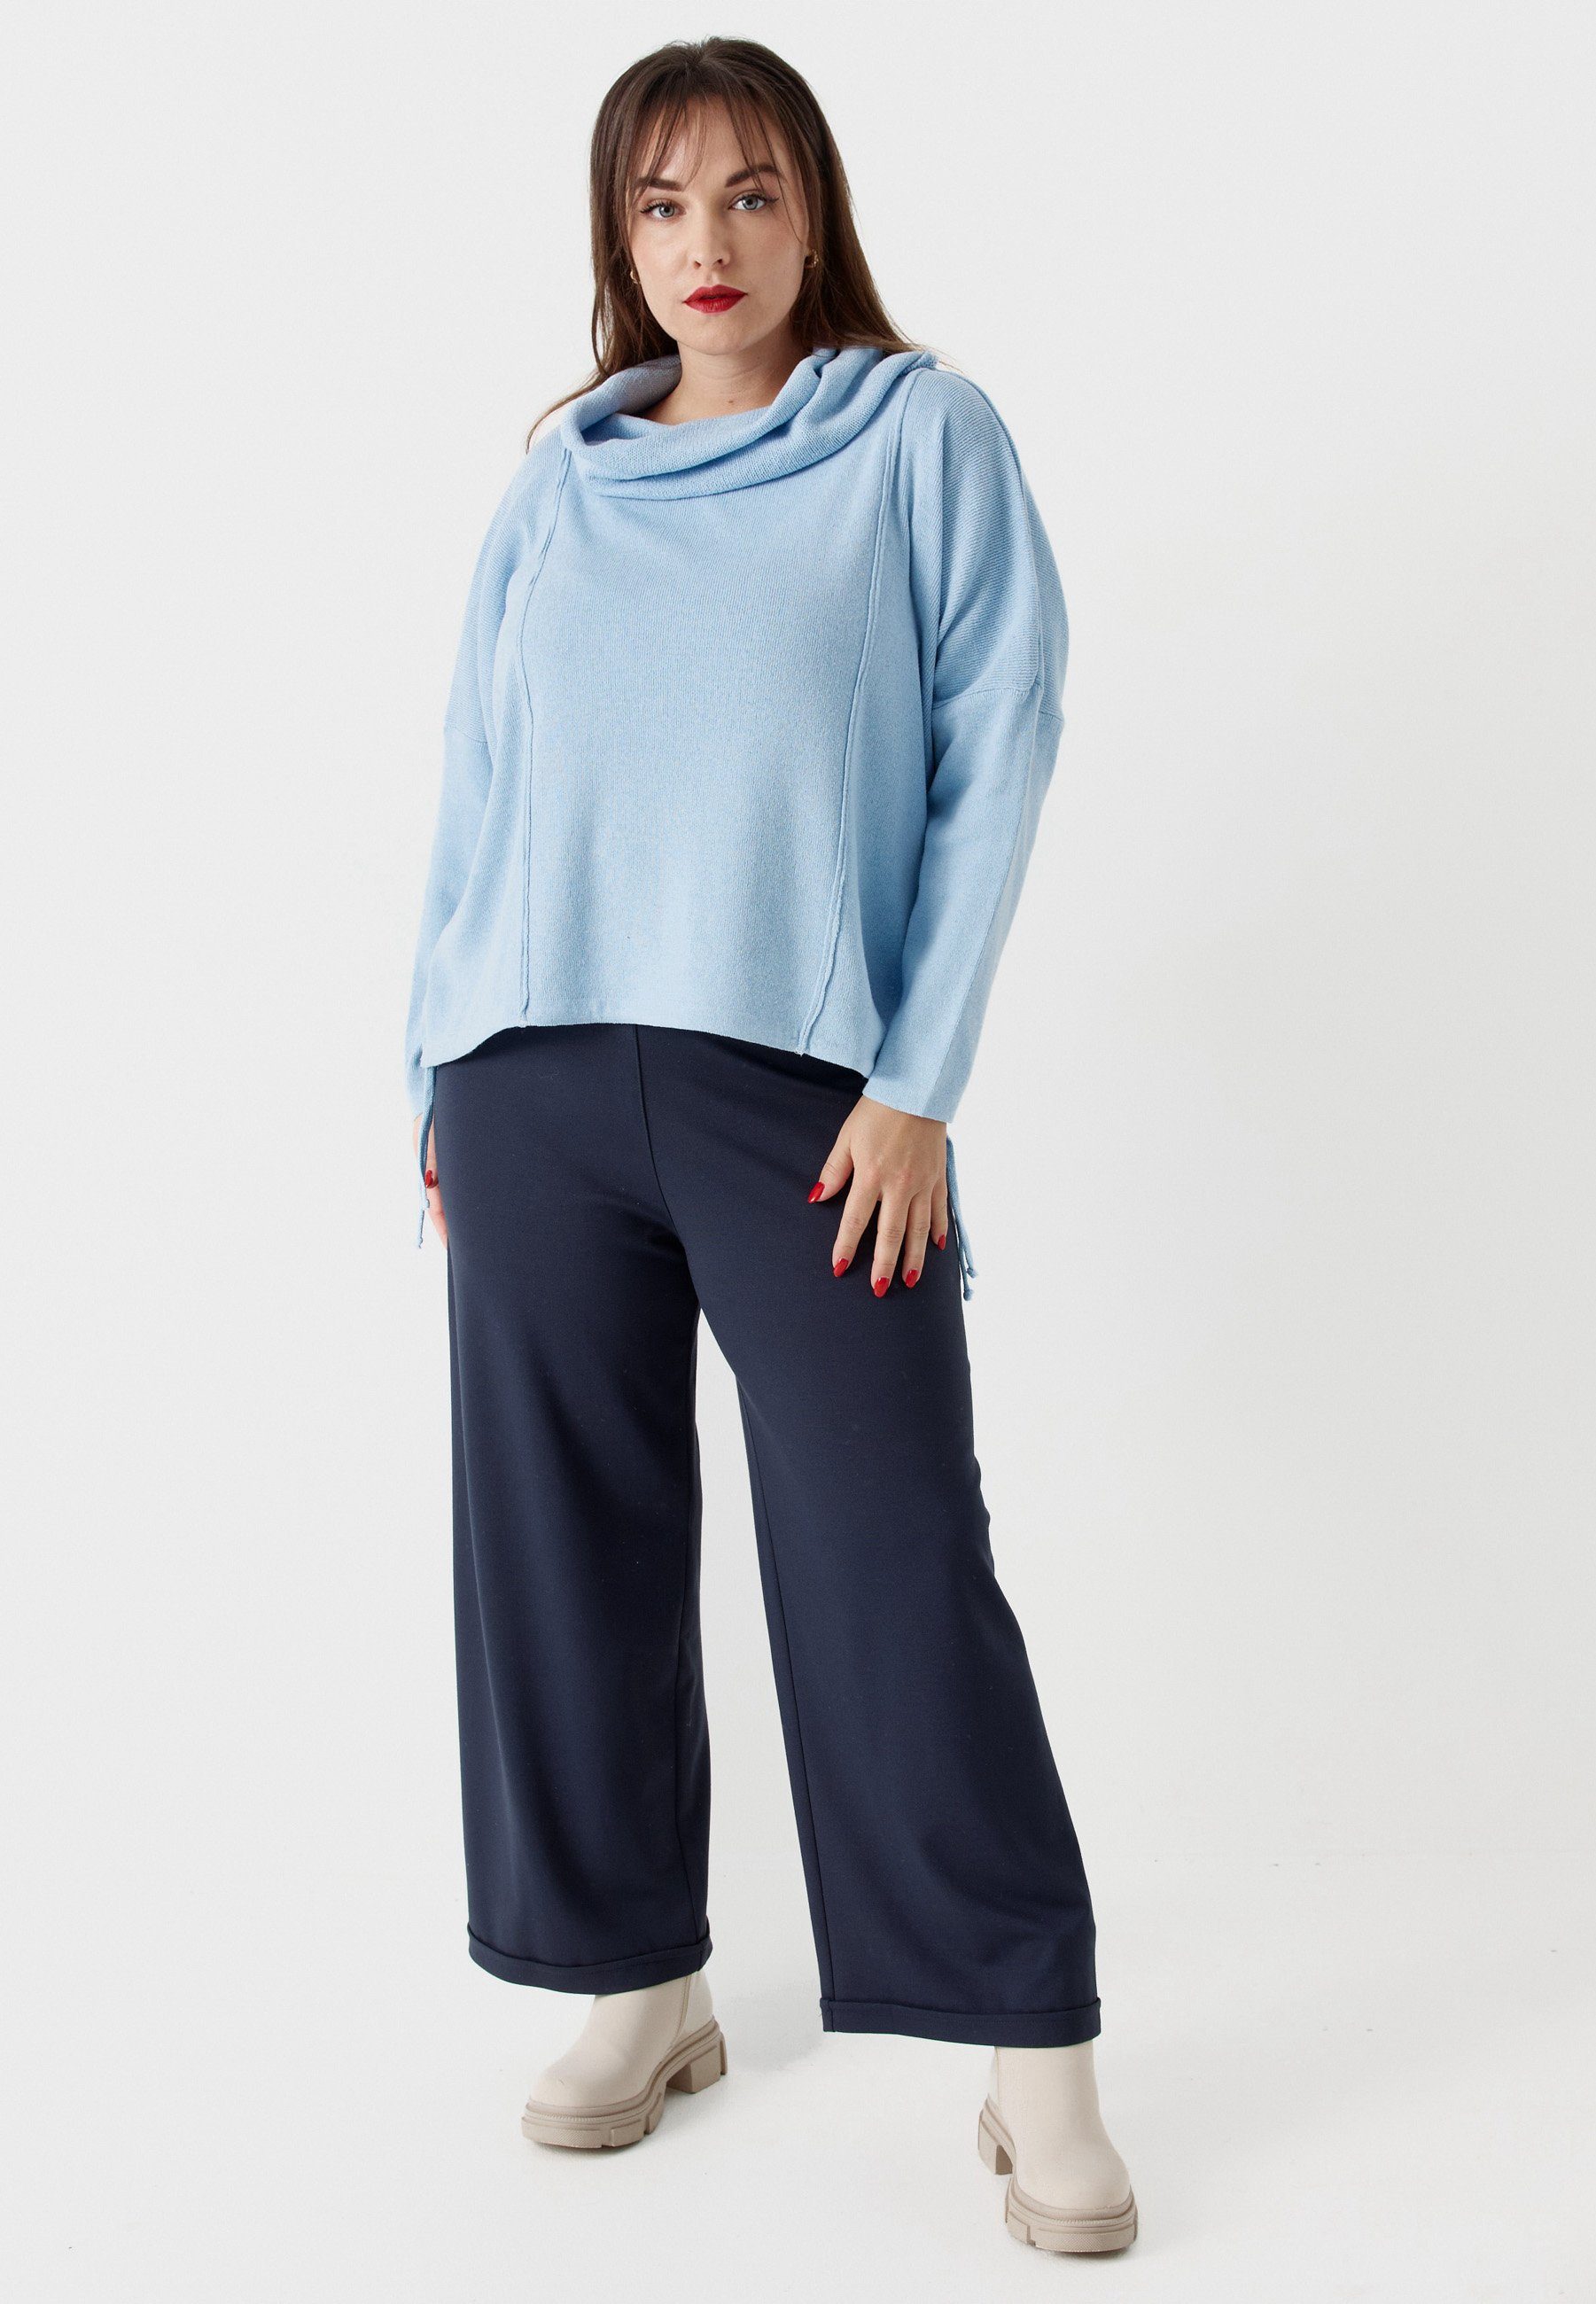 'Pure' reiner Baumwolle mit aus Tunikashirt Himmelblau Schalkragen Pullover Feinstrick Kekoo